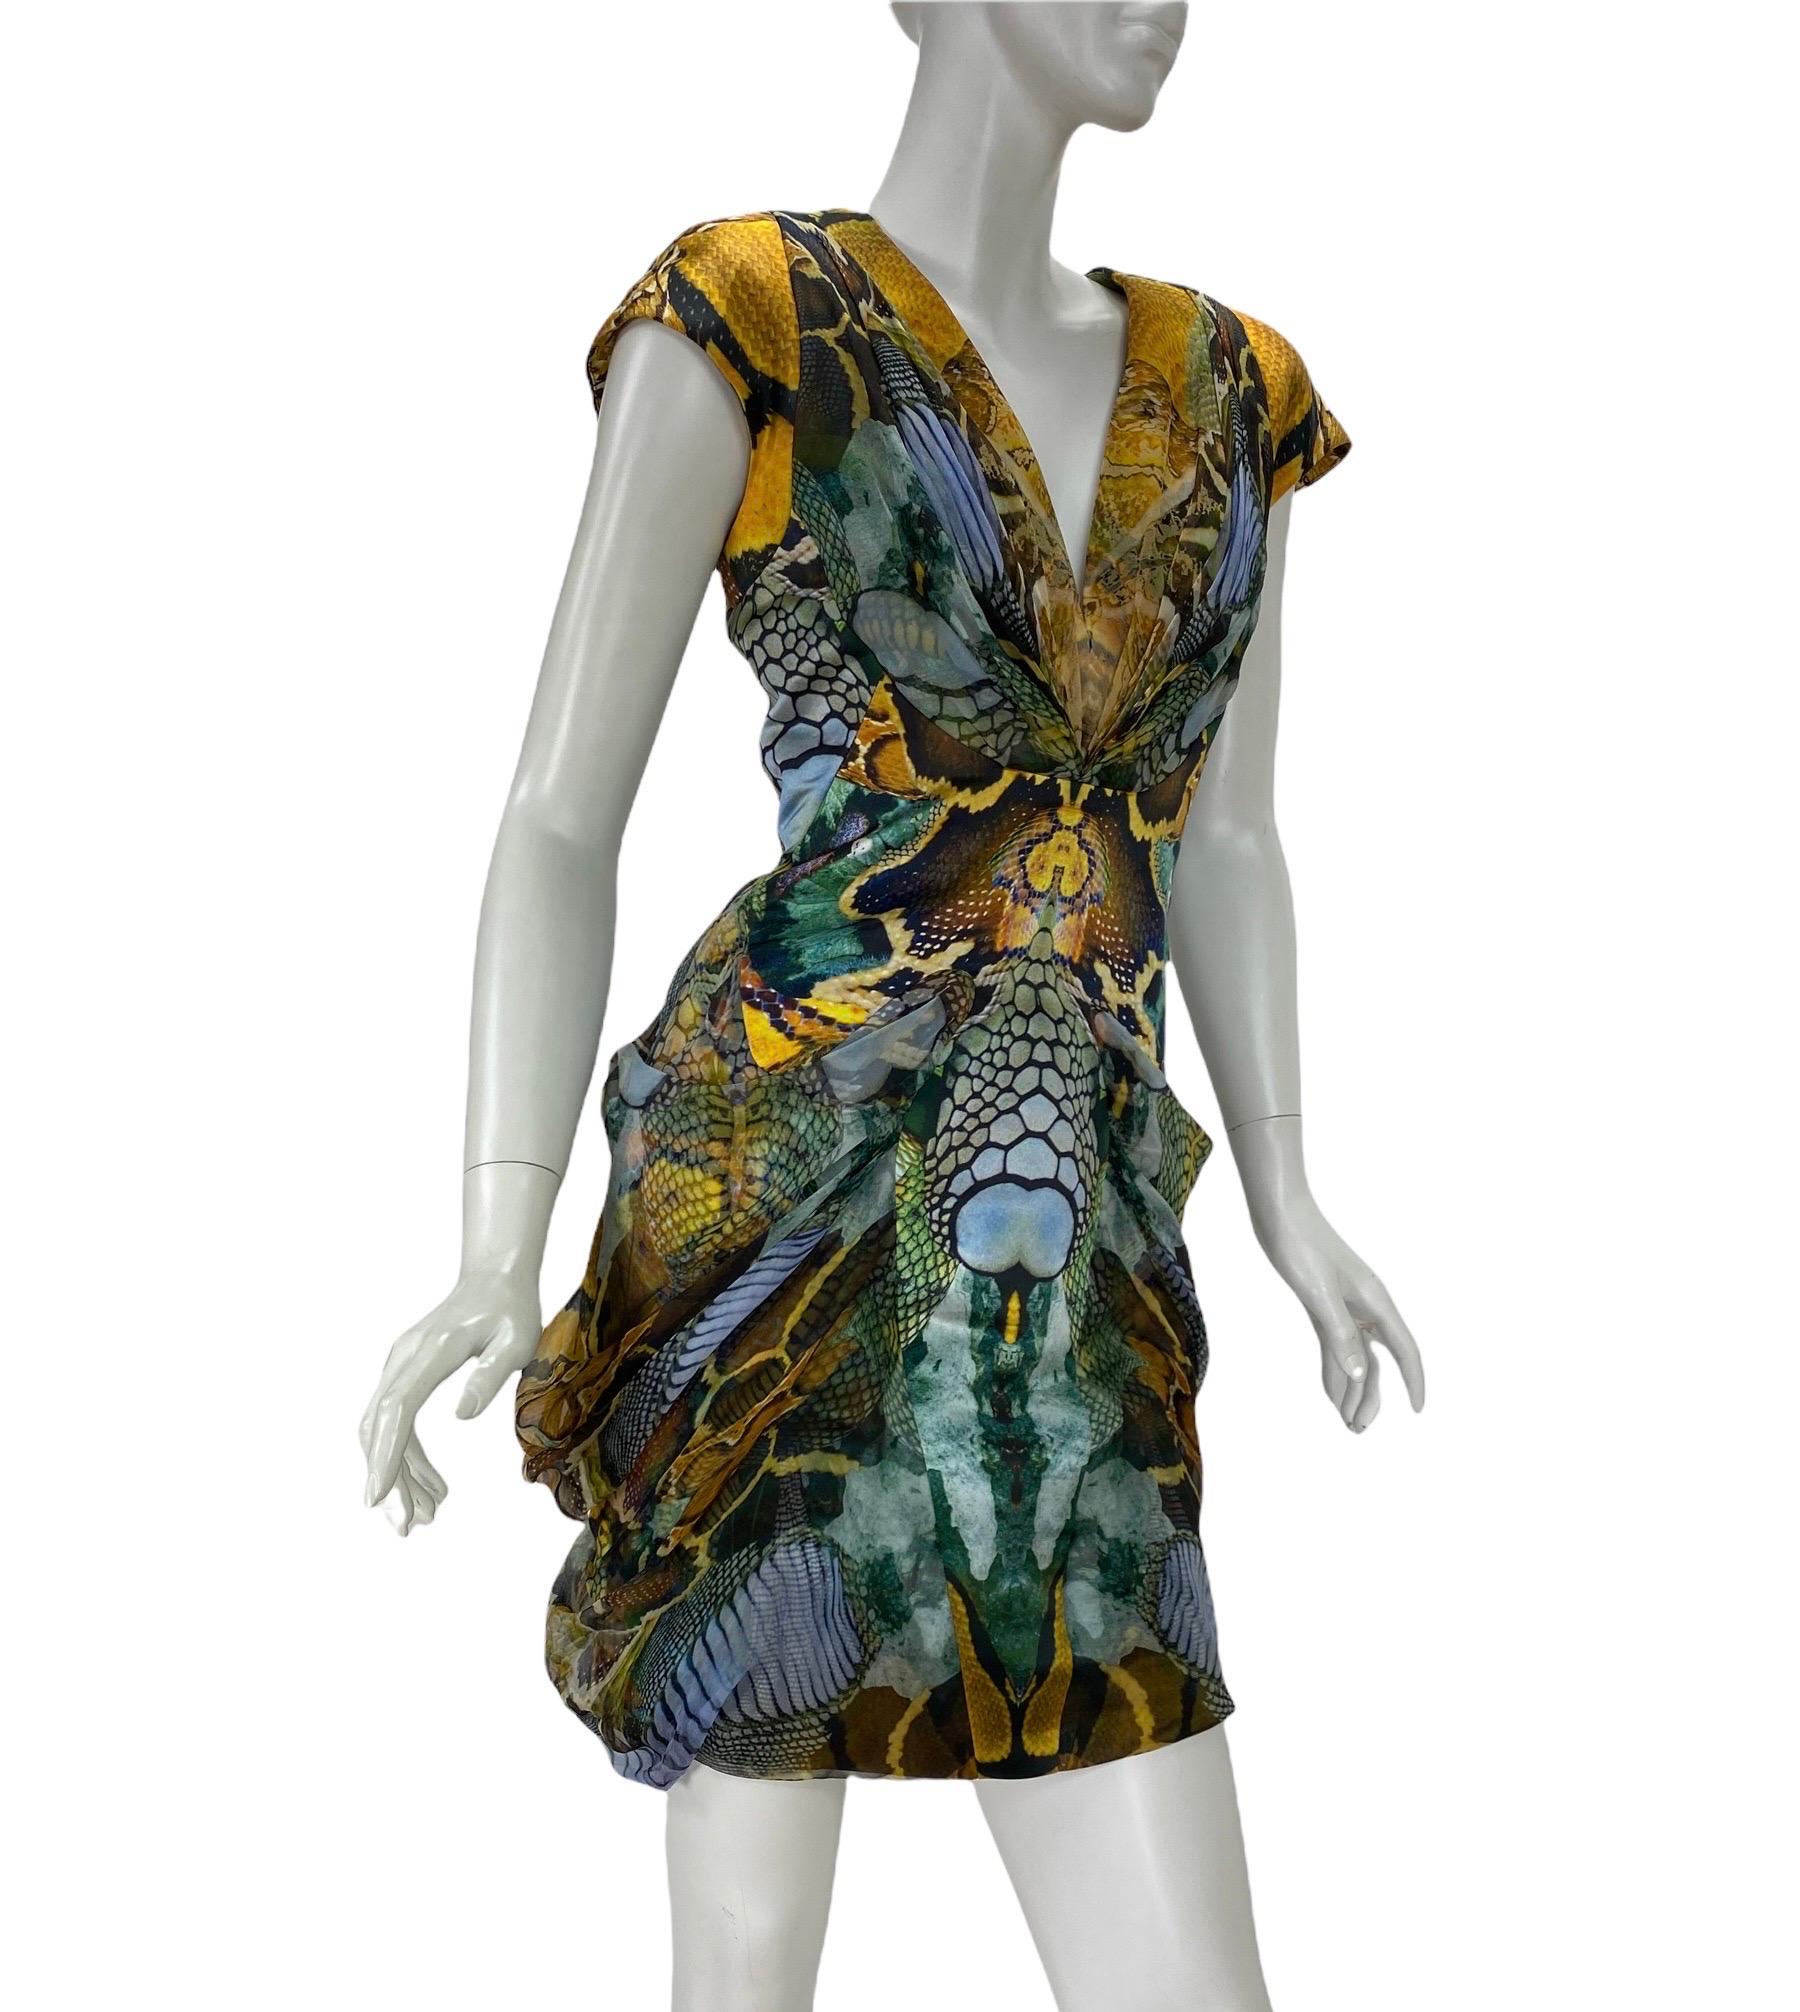 Alexander McQueen - Robe de l'Atlantide de Plato 
Présentée dans New York : The Museum at FIT et en couverture du livre A-Z Fashion Designers. De plus, cette robe particulière a été choisie pour représenter la marque Alexander Mcqueen sur Wikipédia